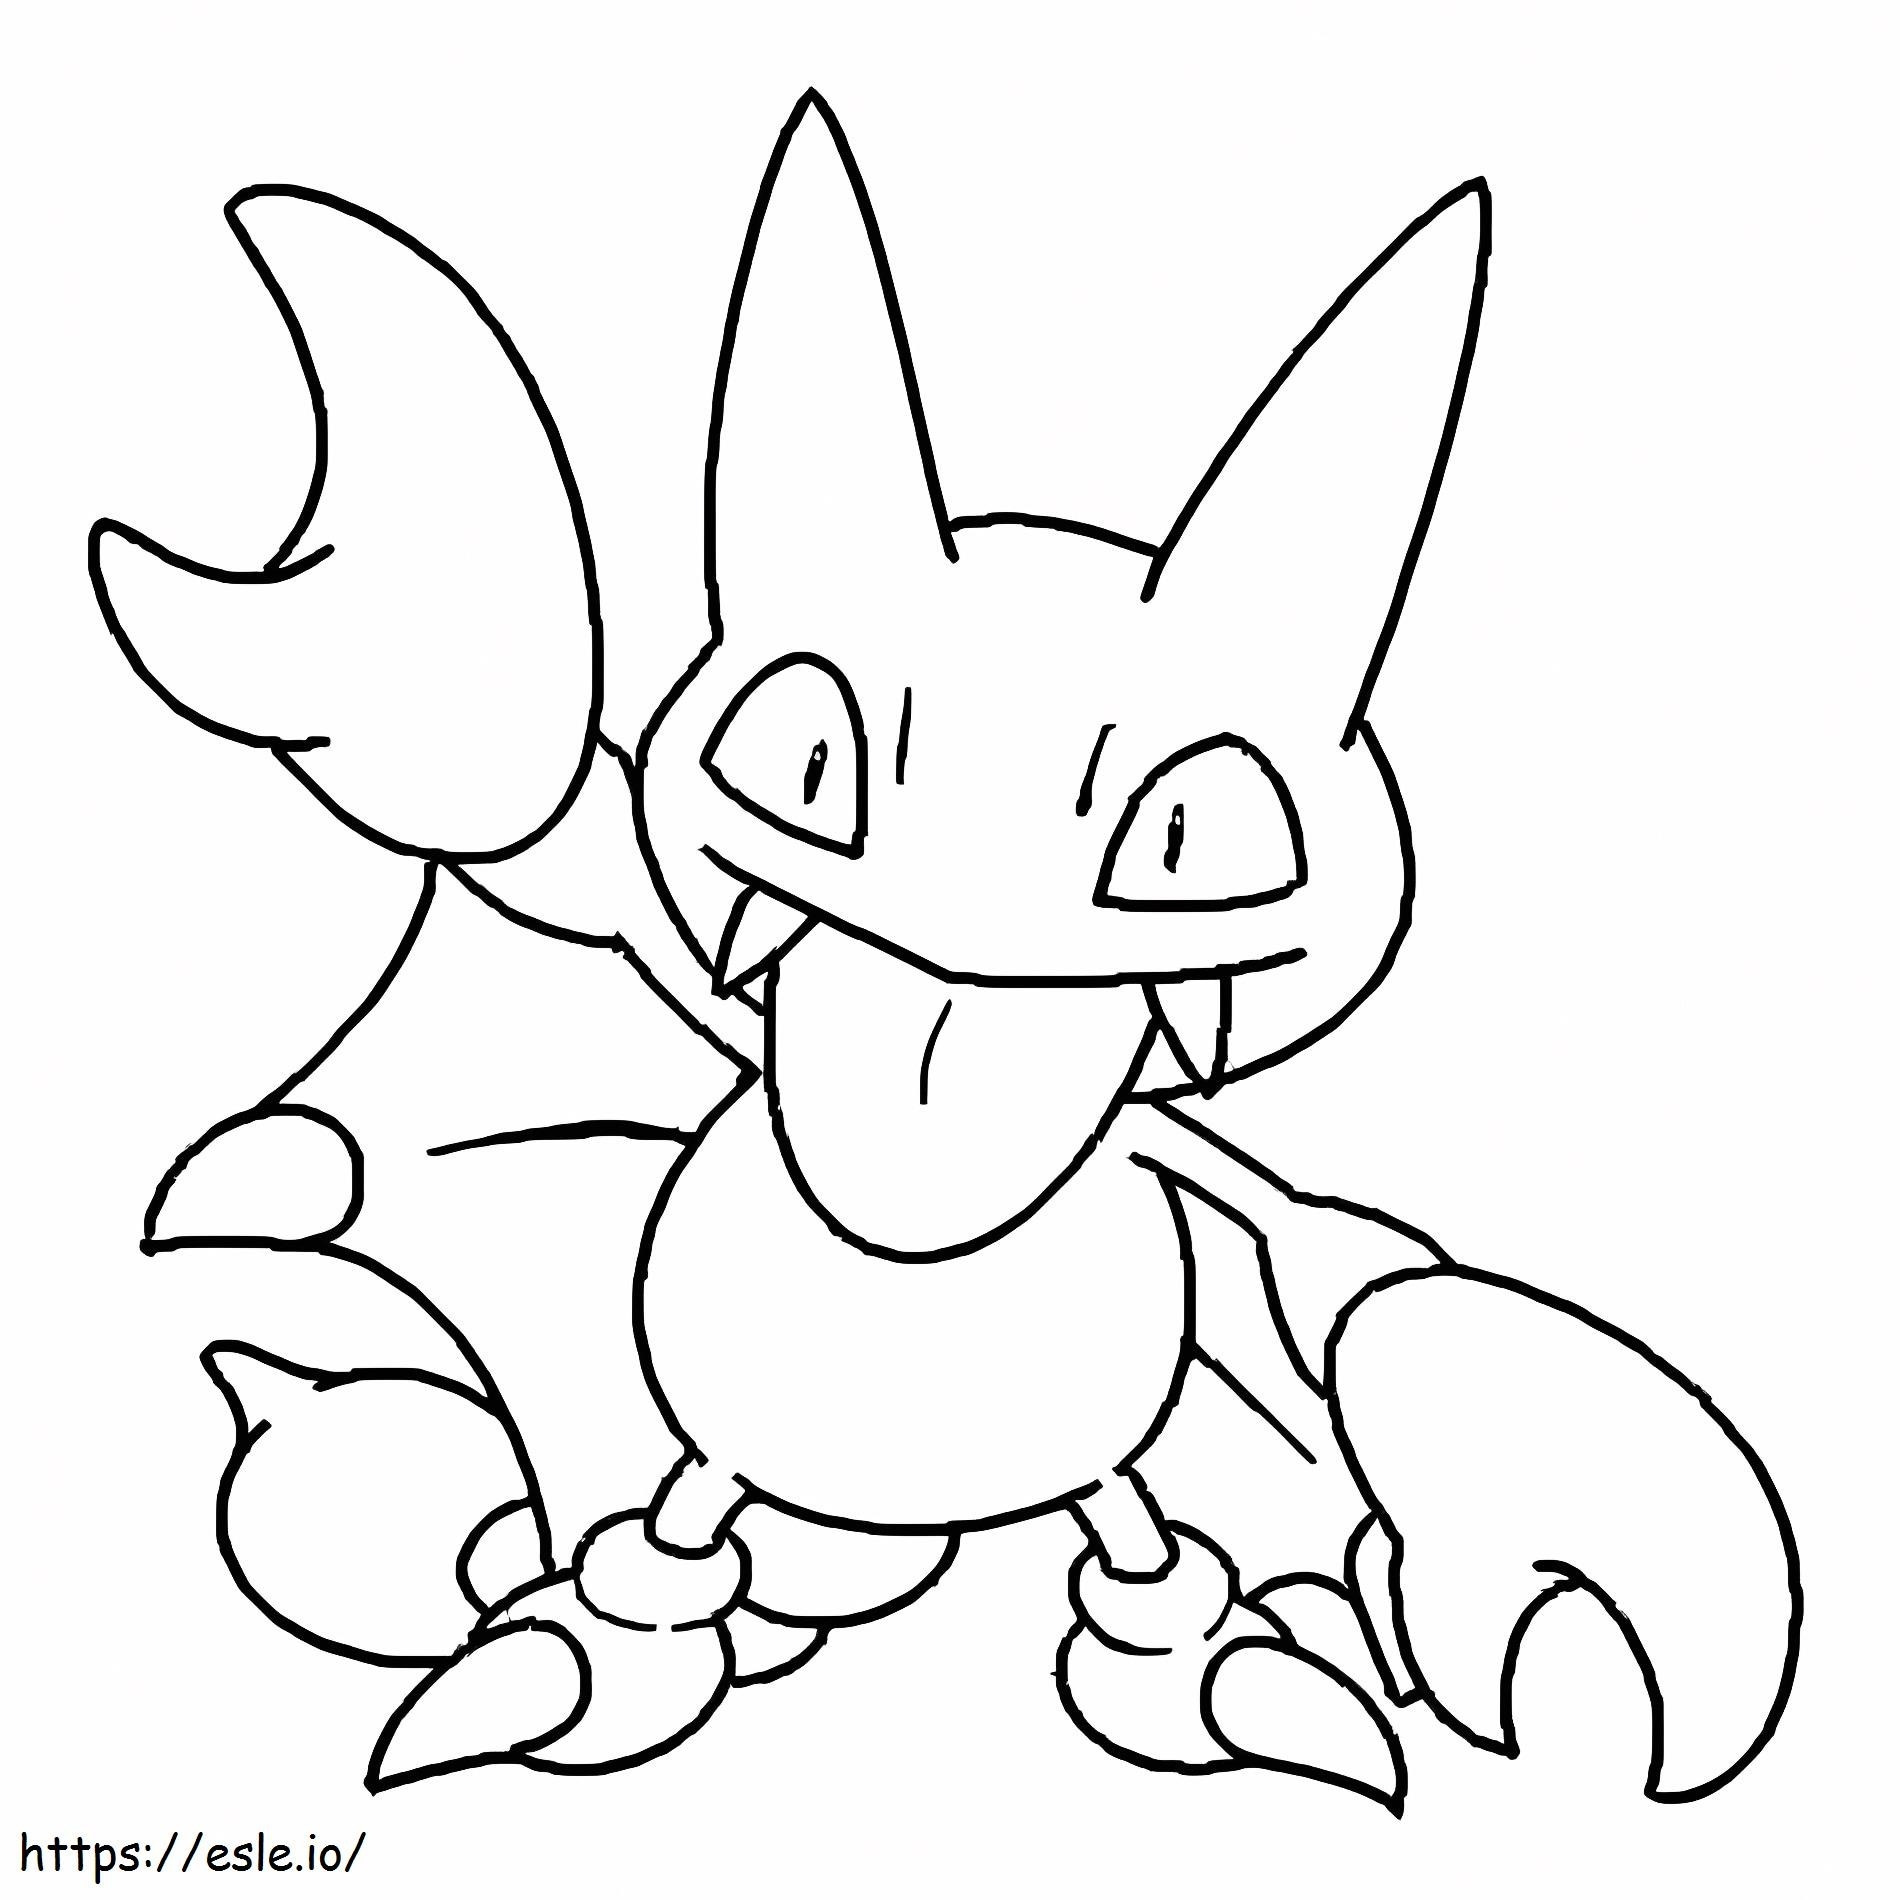 Coloriage Pokémon Gligar Gen 2 à imprimer dessin